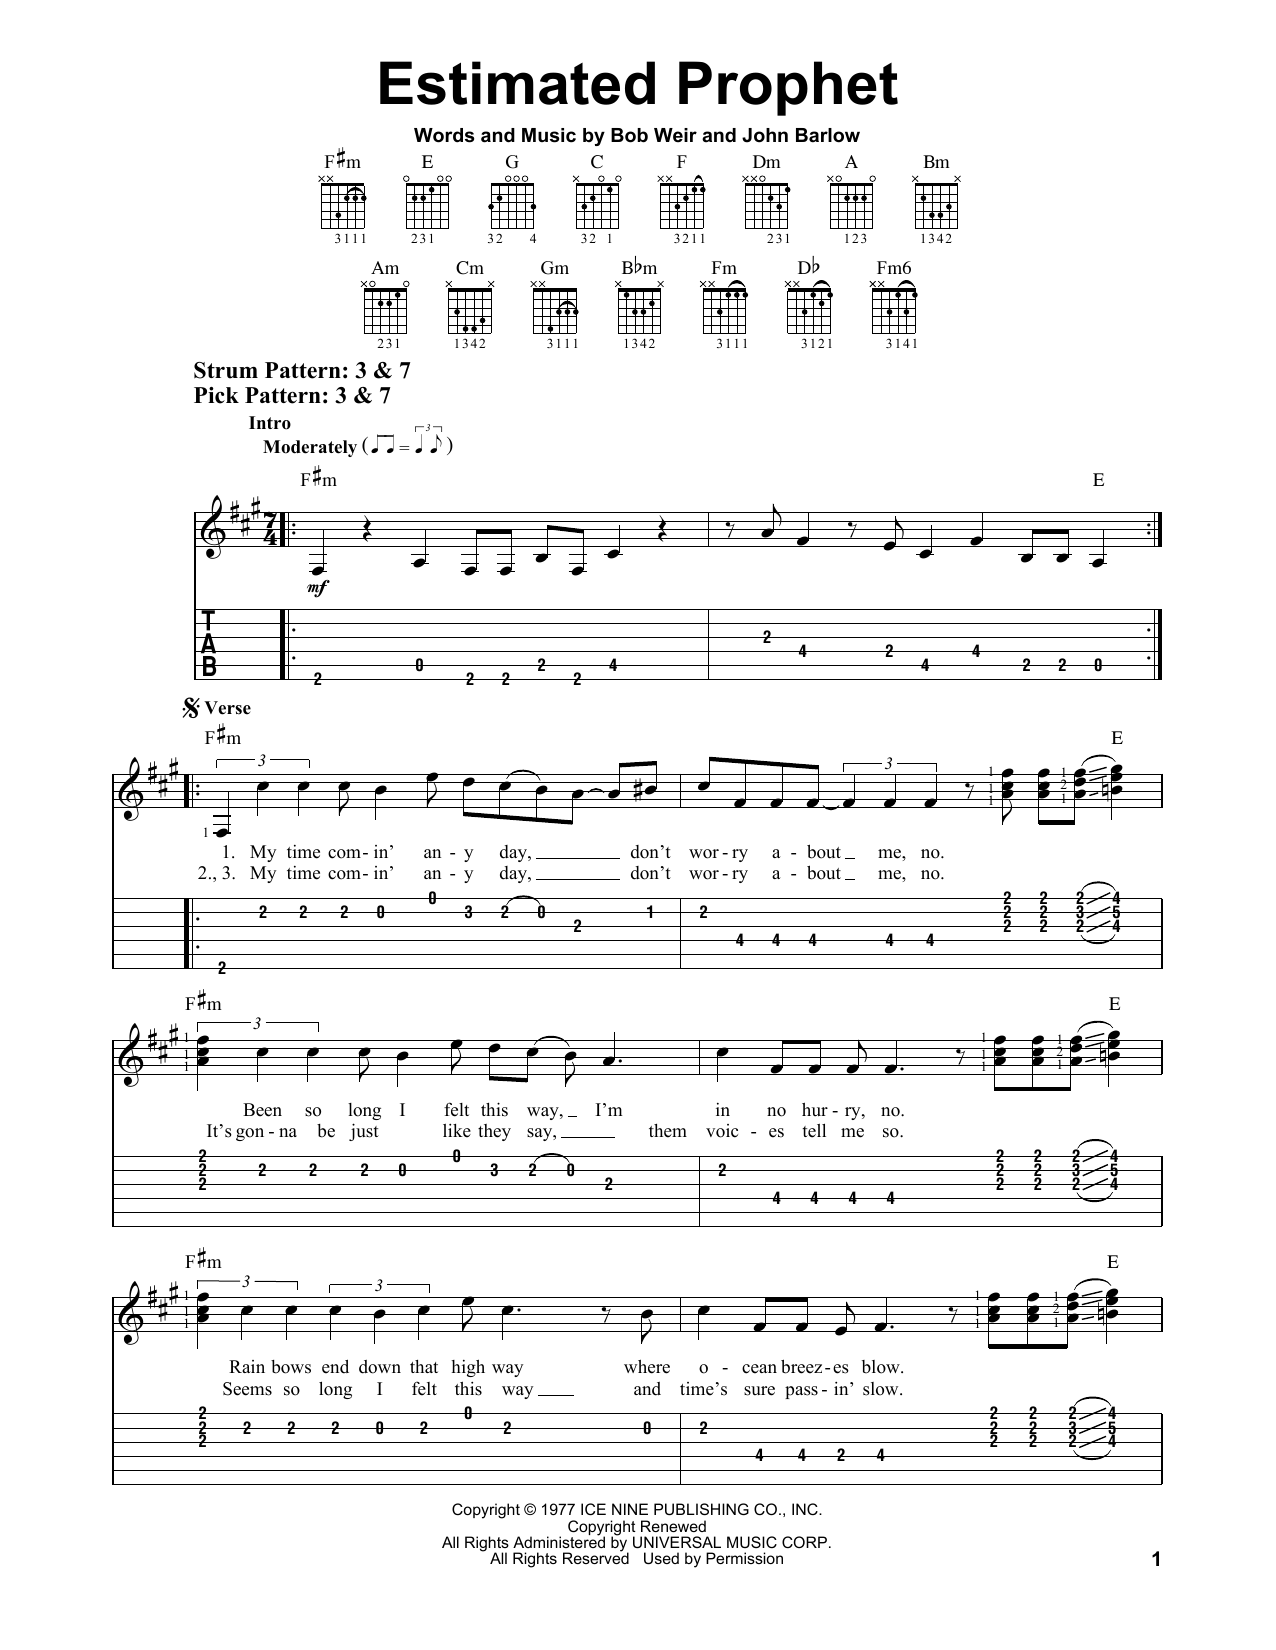 Grateful Dead Estimated Prophet Sheet Music Notes & Chords for Lyrics & Chords - Download or Print PDF